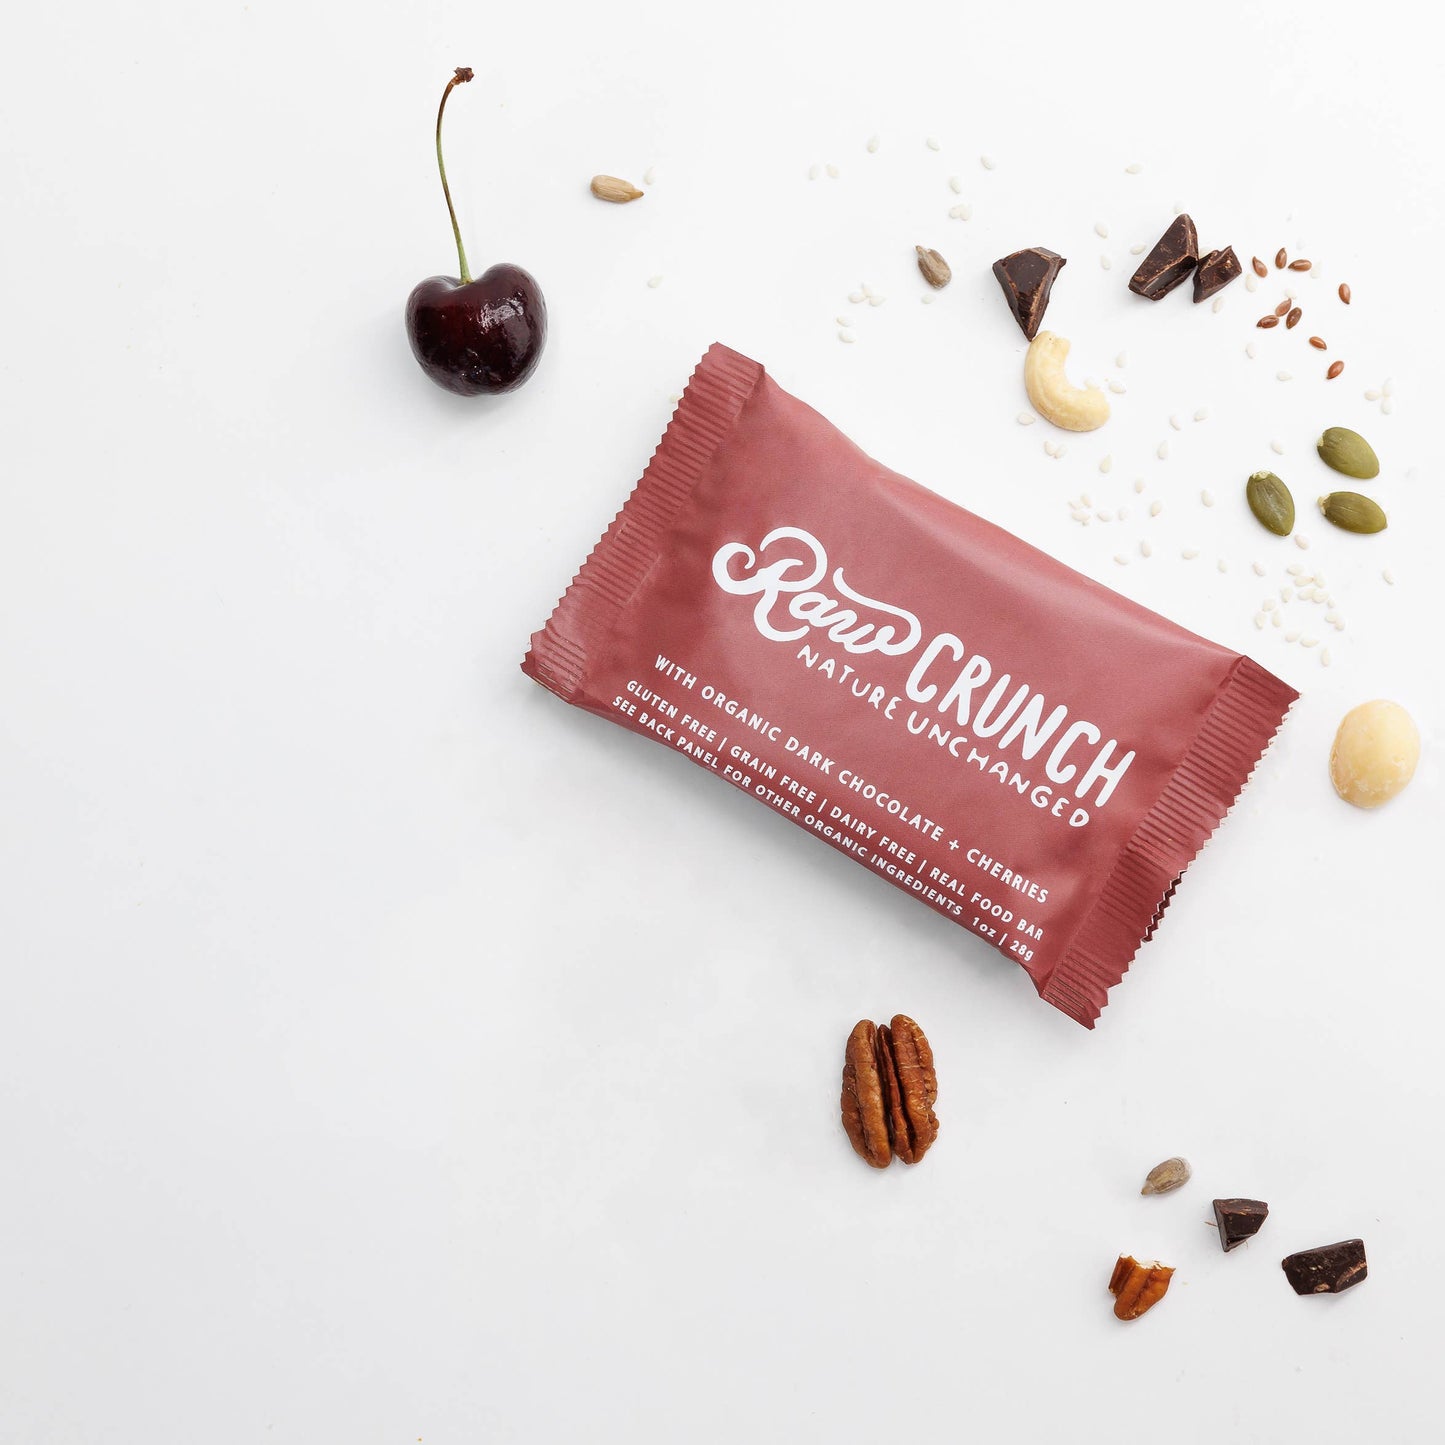 Raw Crunch® - Organic Dark Chocolate Cherry - 12 bars